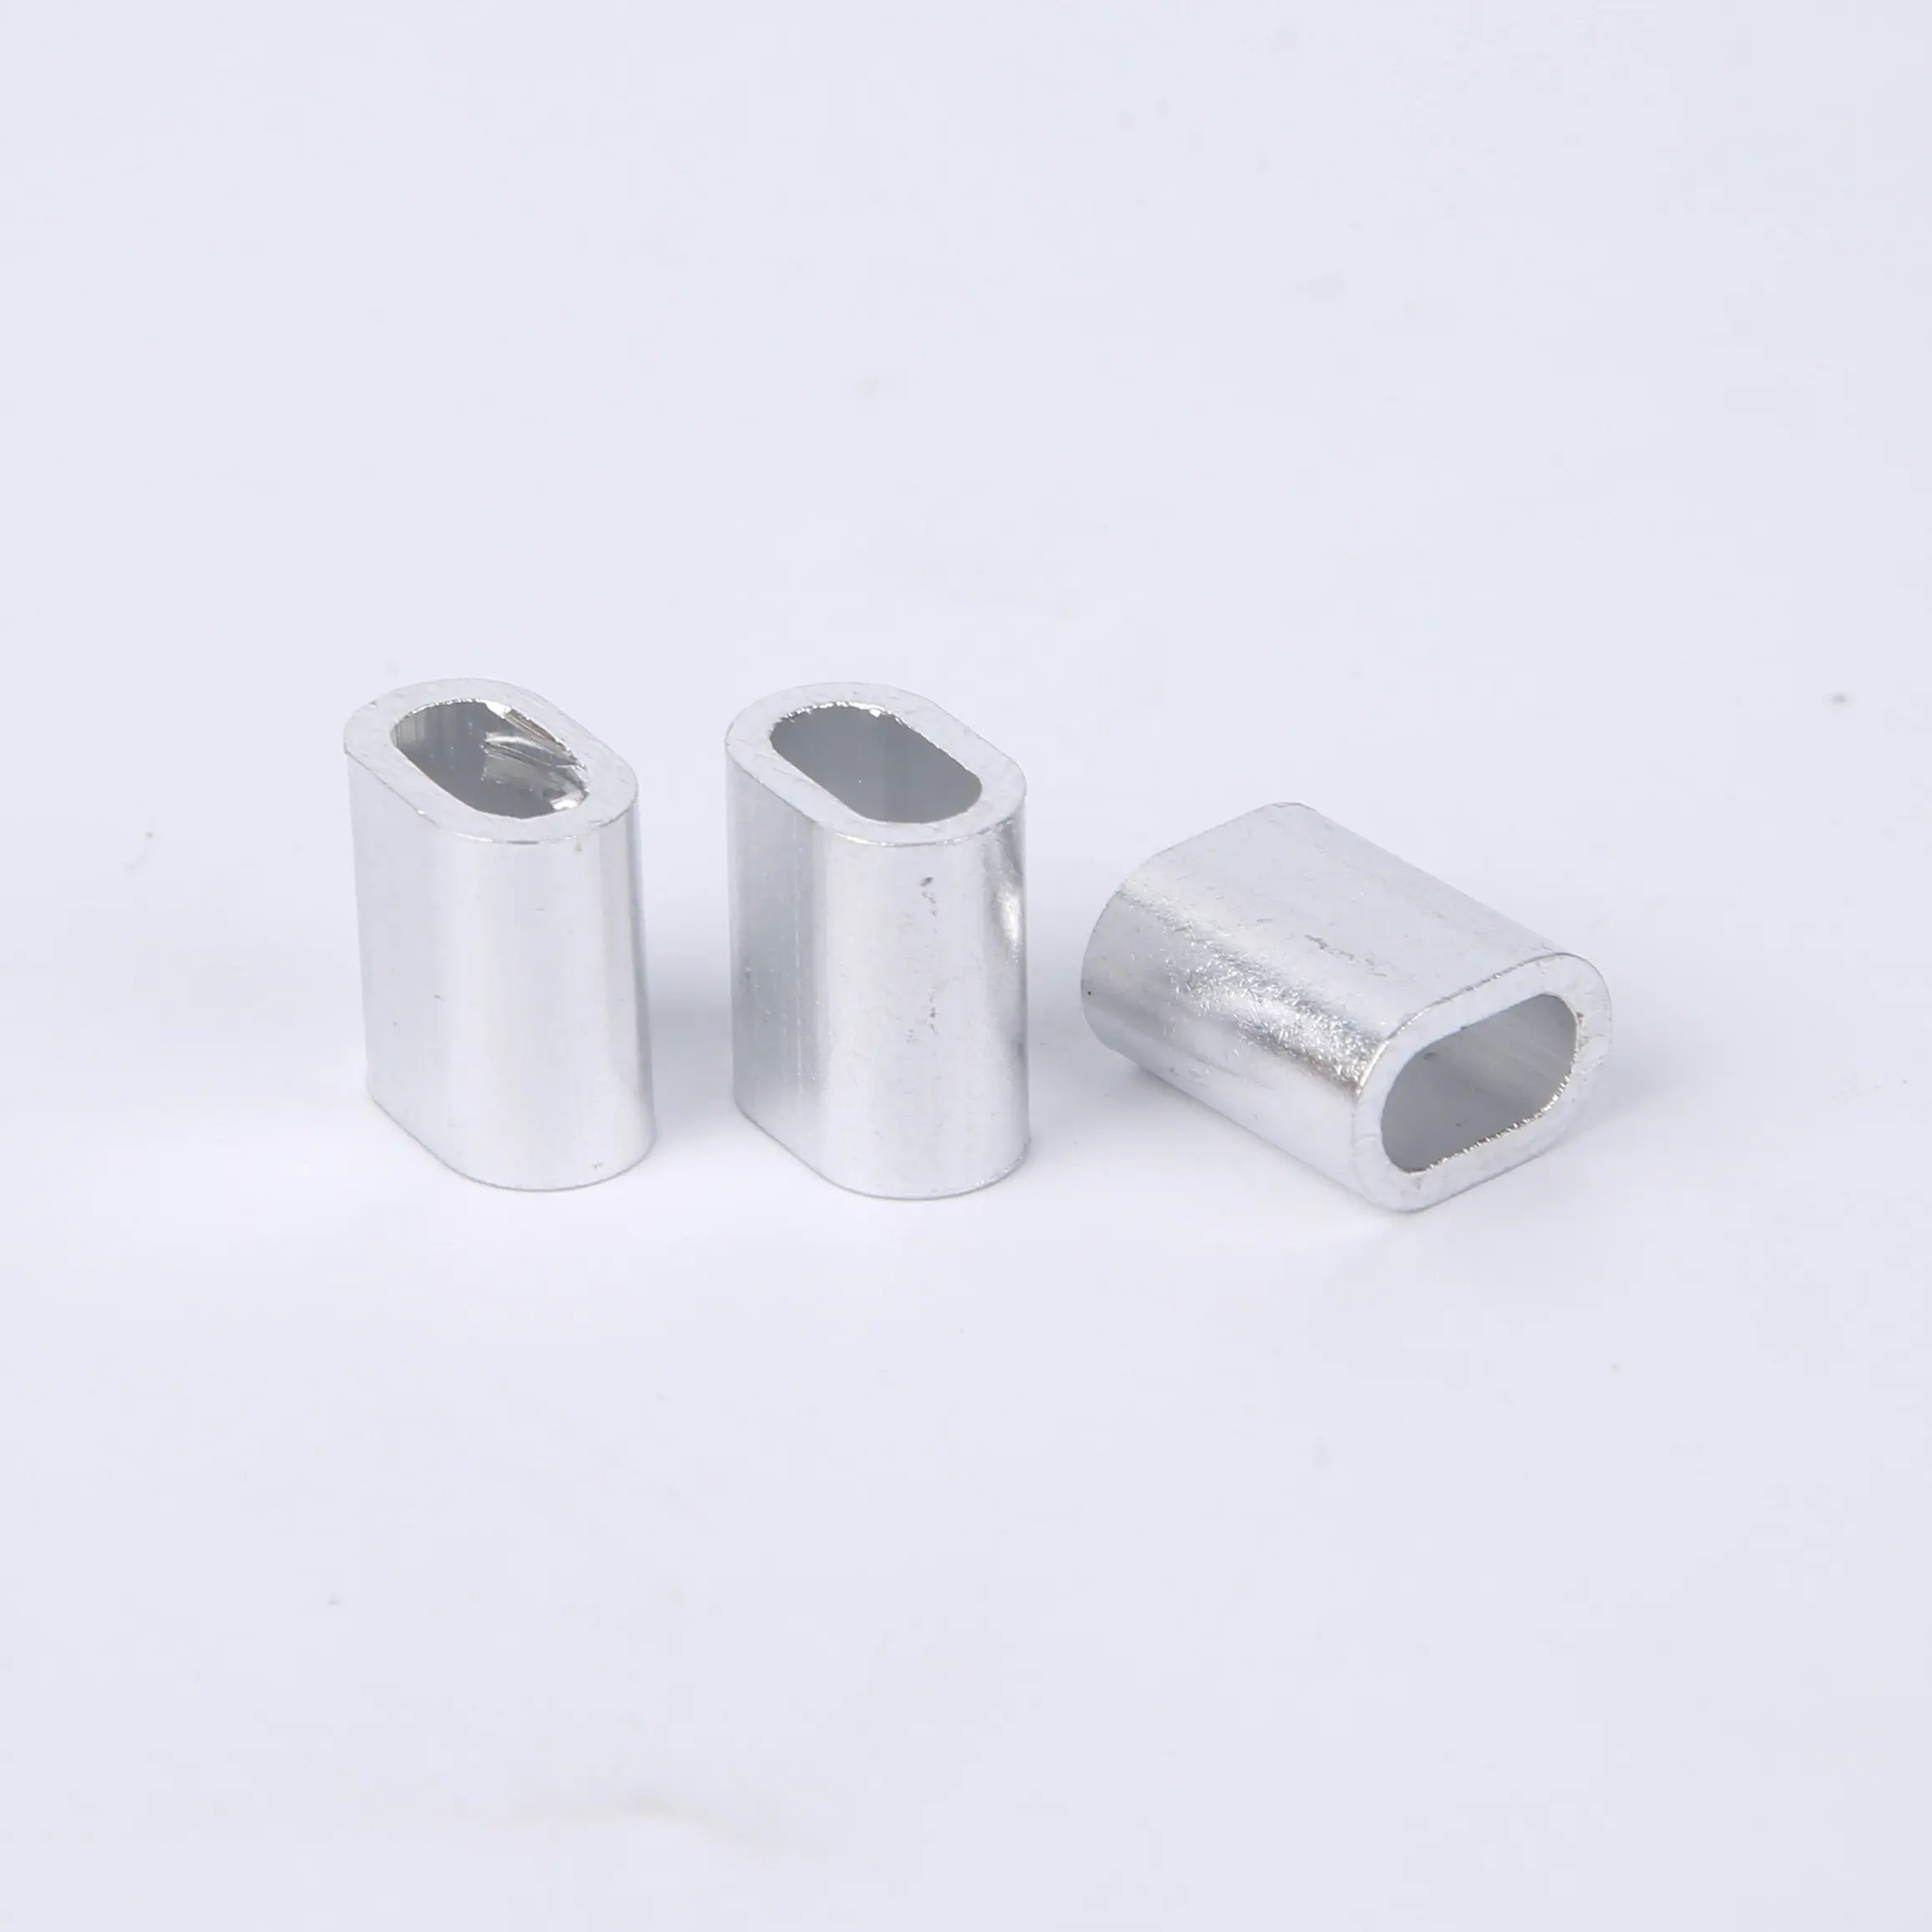 Ovale Aluminium hülse mit 4-112mm Hülse für Drahtseil hülse